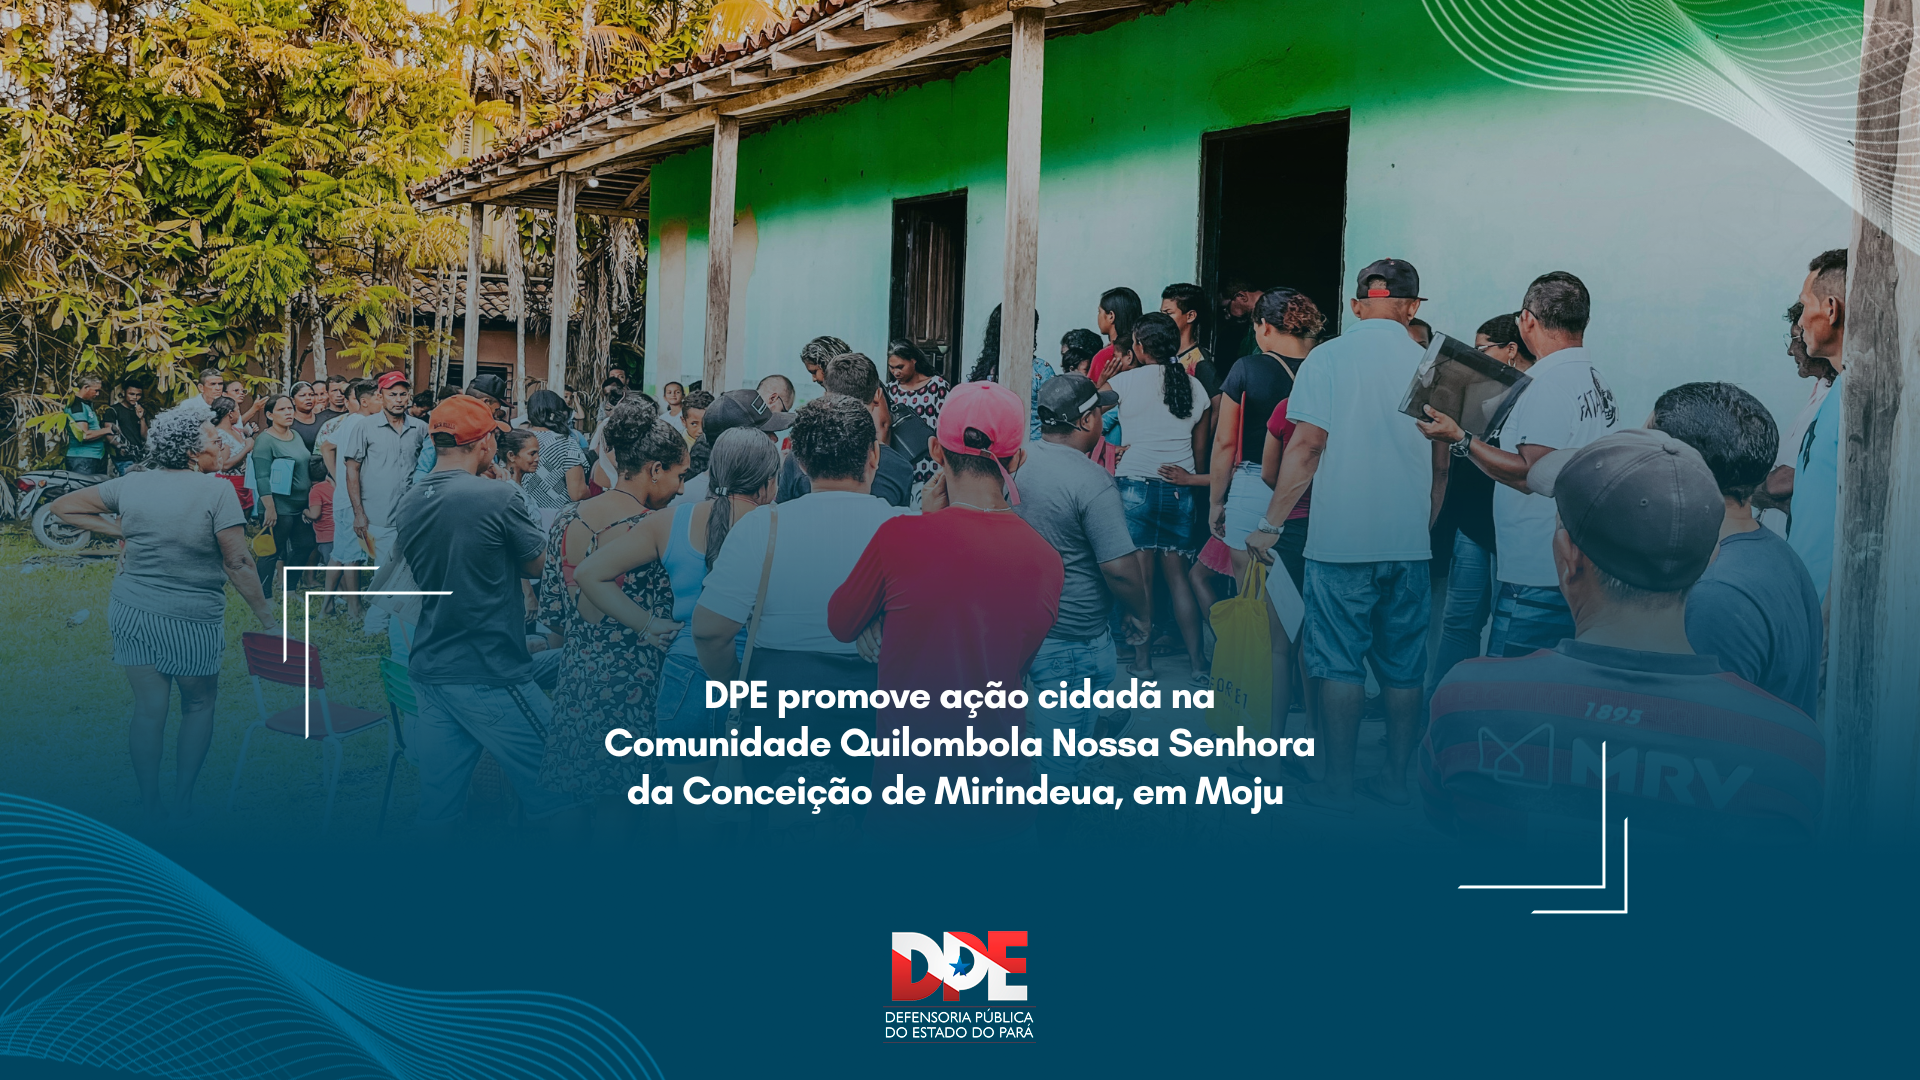 DPE promove ação cidadã na Comunidade Quilombola Nossa Senhora da Conceição de Mirindeua, em Moju 